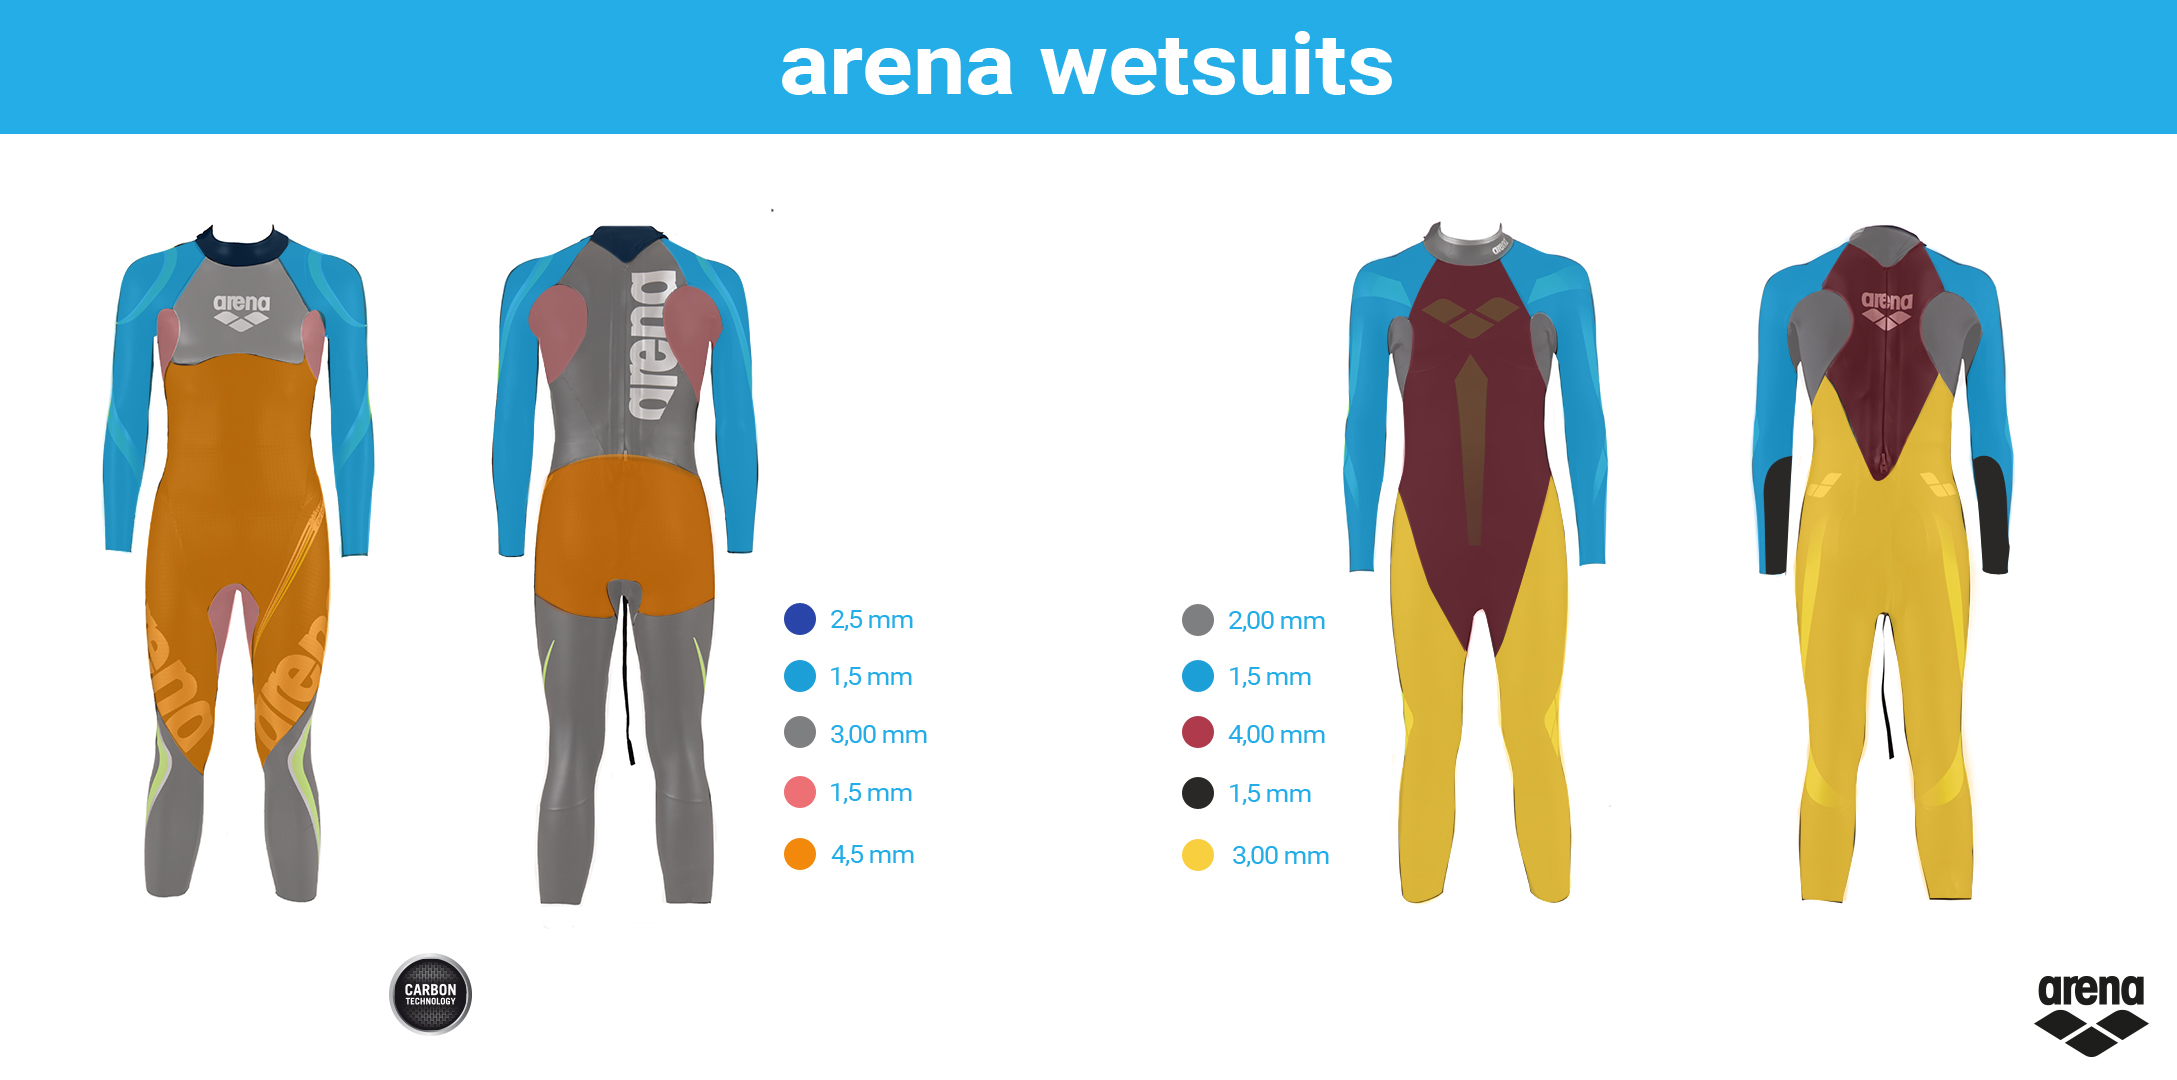 Noti- Deporte: Guía rápida para elegir tu traje de neopreno arena